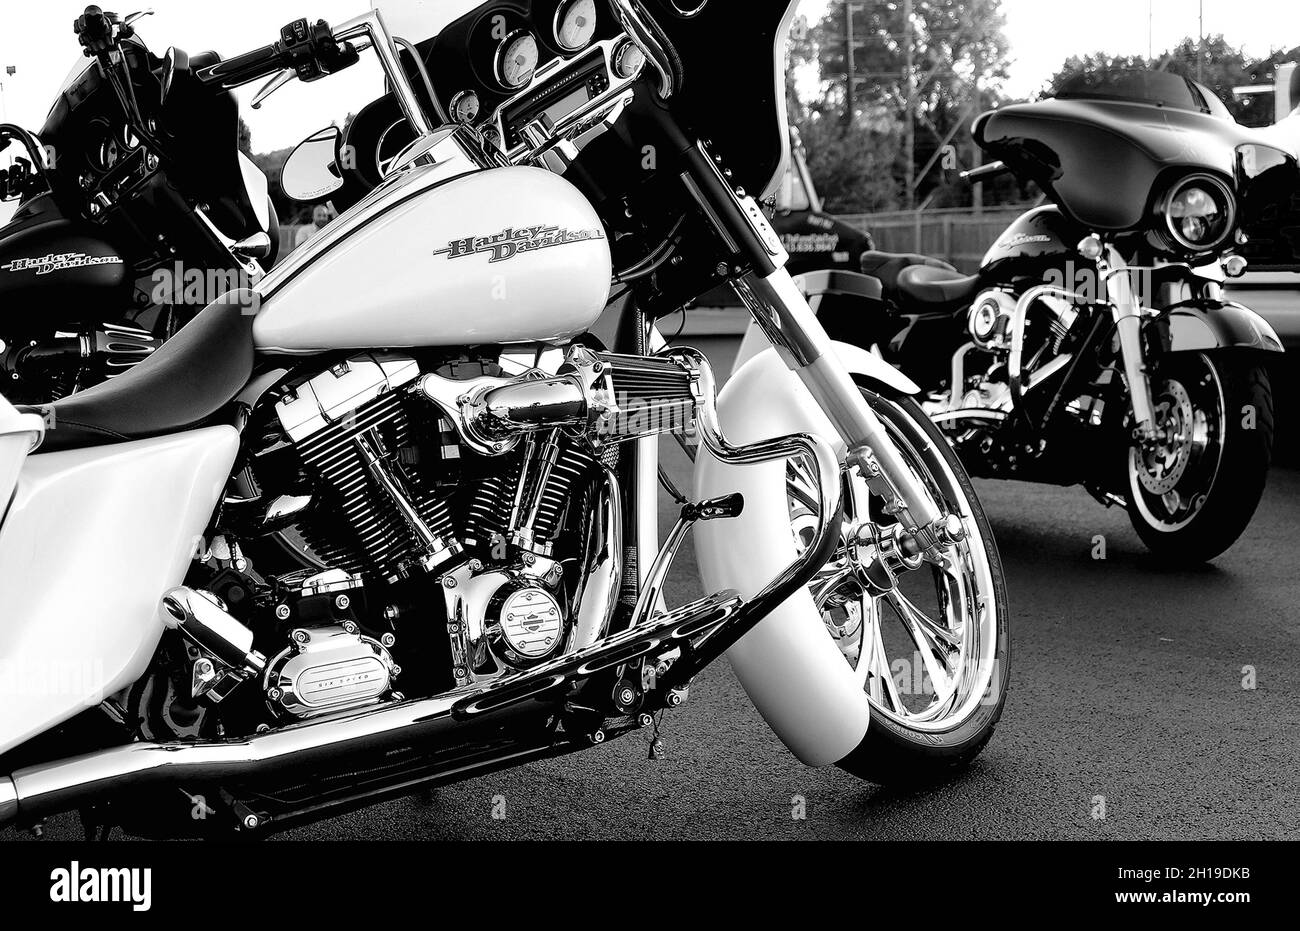 KANSAS CITY, VEREINIGTE STAATEN - Sep 24, 2021: Eine Graustufe eines seltenen weißen Harley Davidson Motorrades auf der Straße Stockfoto